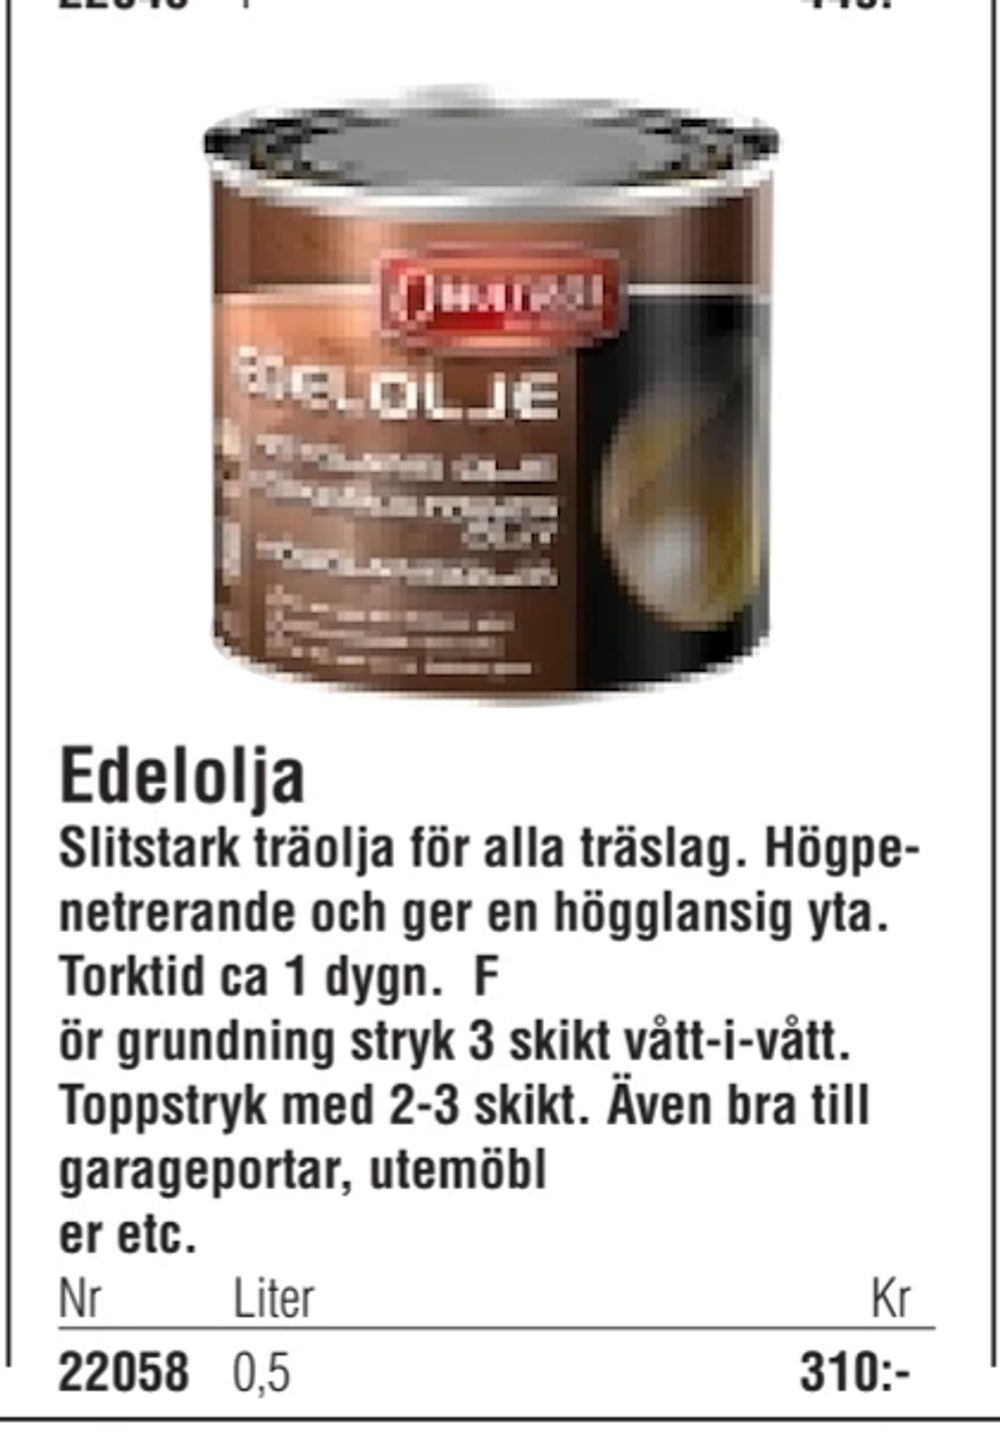 Erbjudanden på Edelolja från Erlandsons Brygga för 310 kr